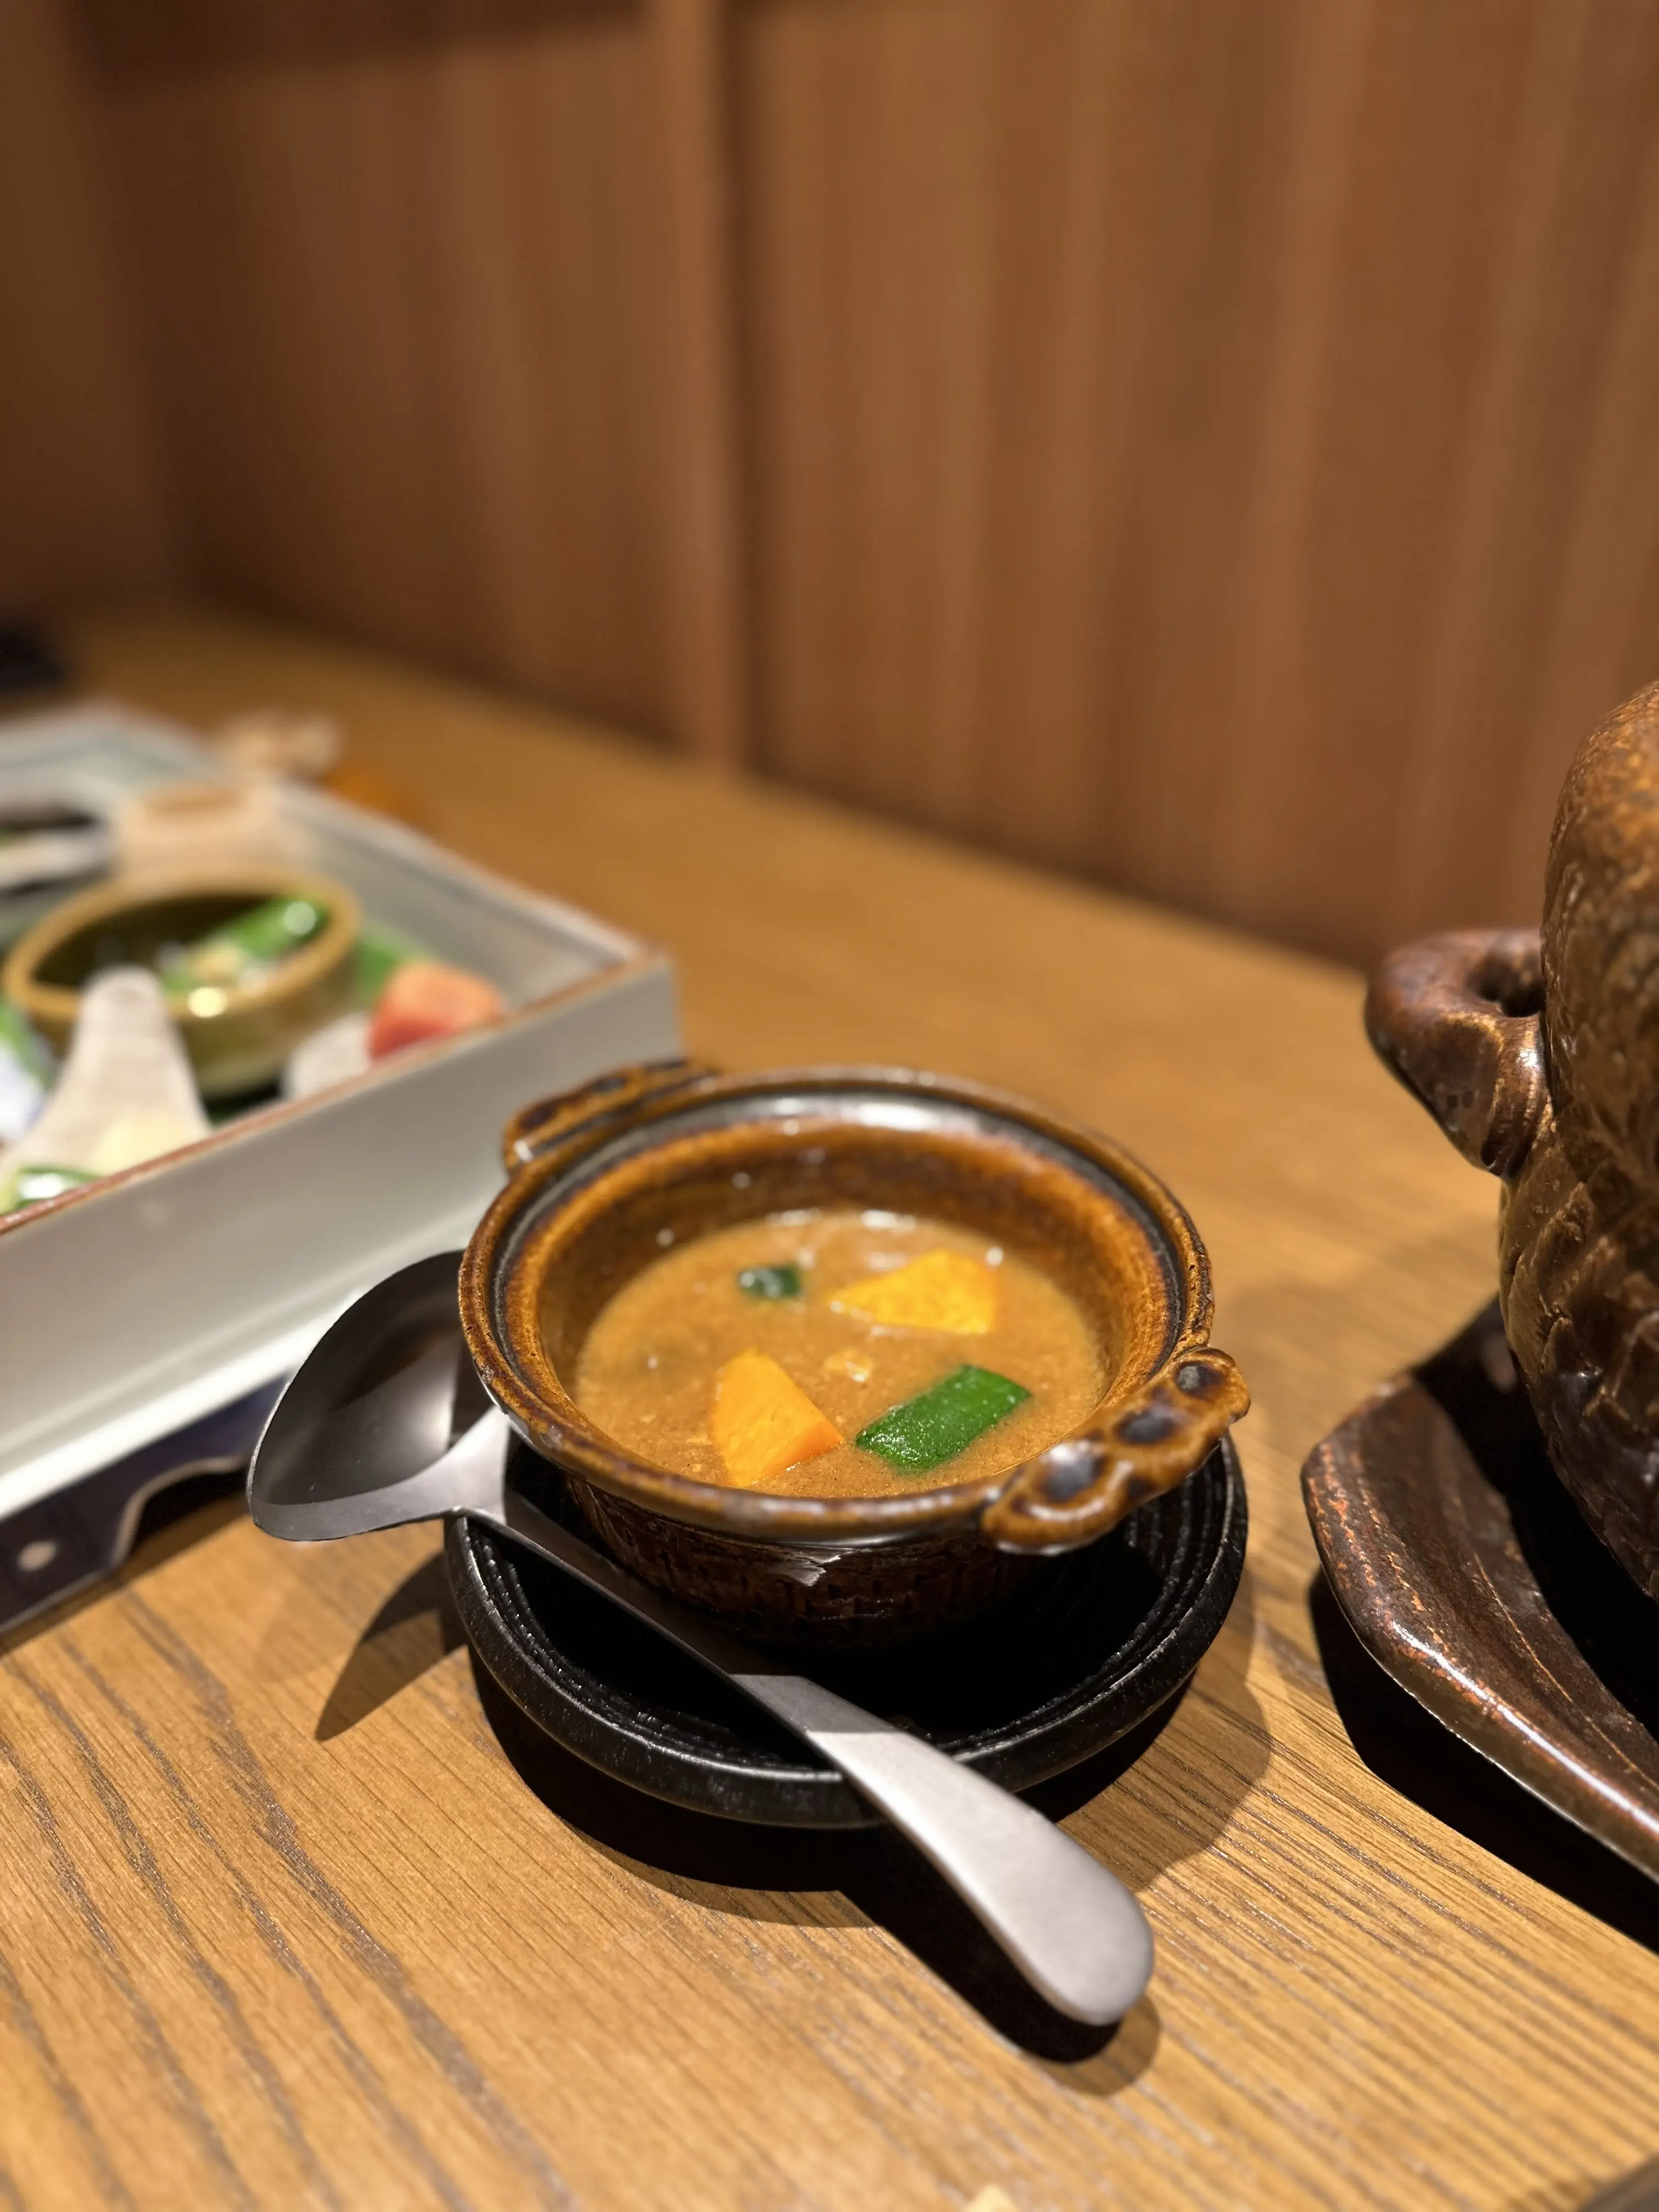 1月開業した『ふふ箱根』で、日本料理を堪能【箱根旅行①】_1_15